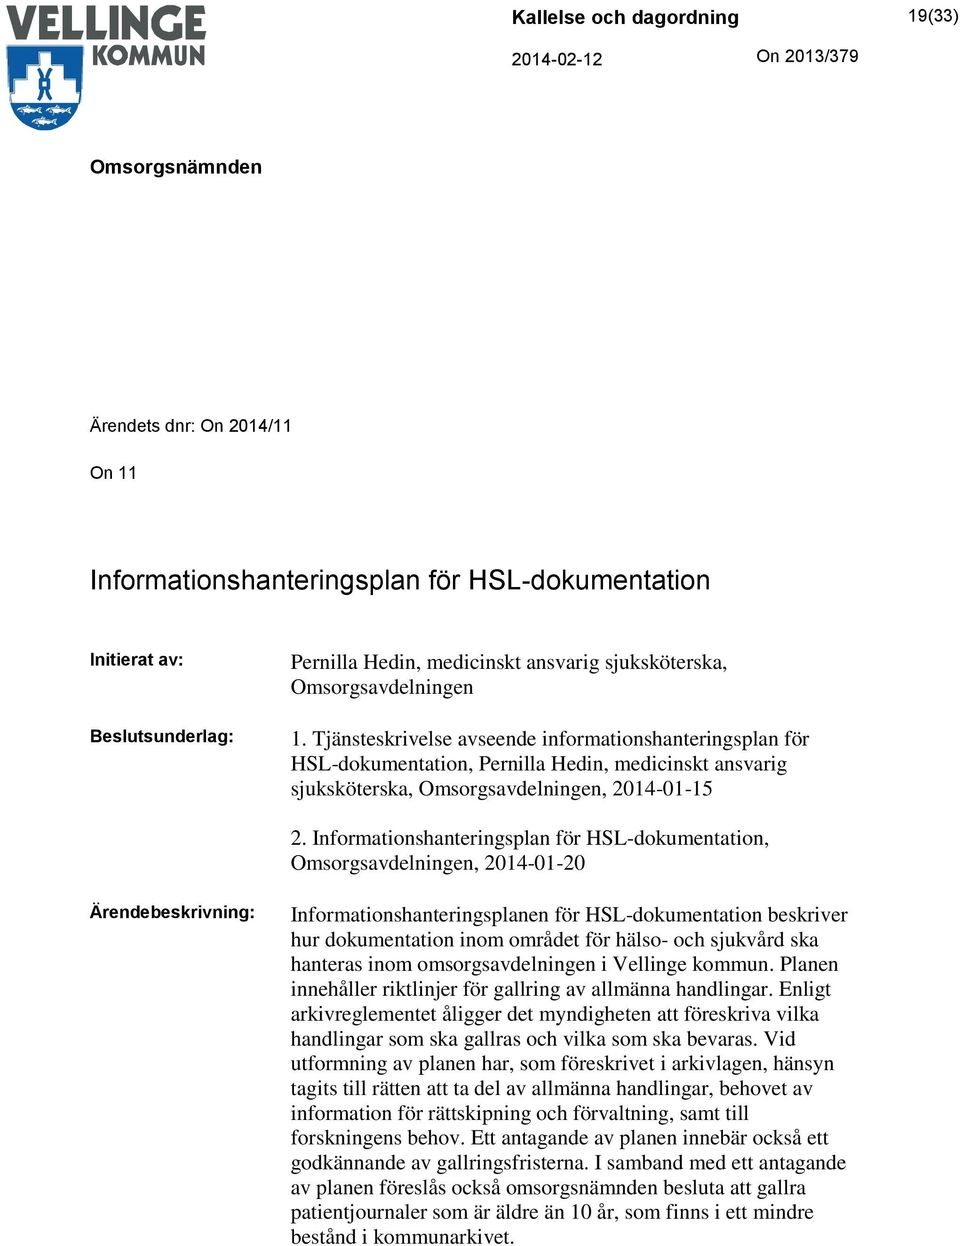 Informationshanteringsplan för HSL-dokumentation, Omsorgsavdelningen, 2014-01-20 Ärendebeskrivning: Informationshanteringsplanen för HSL-dokumentation beskriver hur dokumentation inom området för